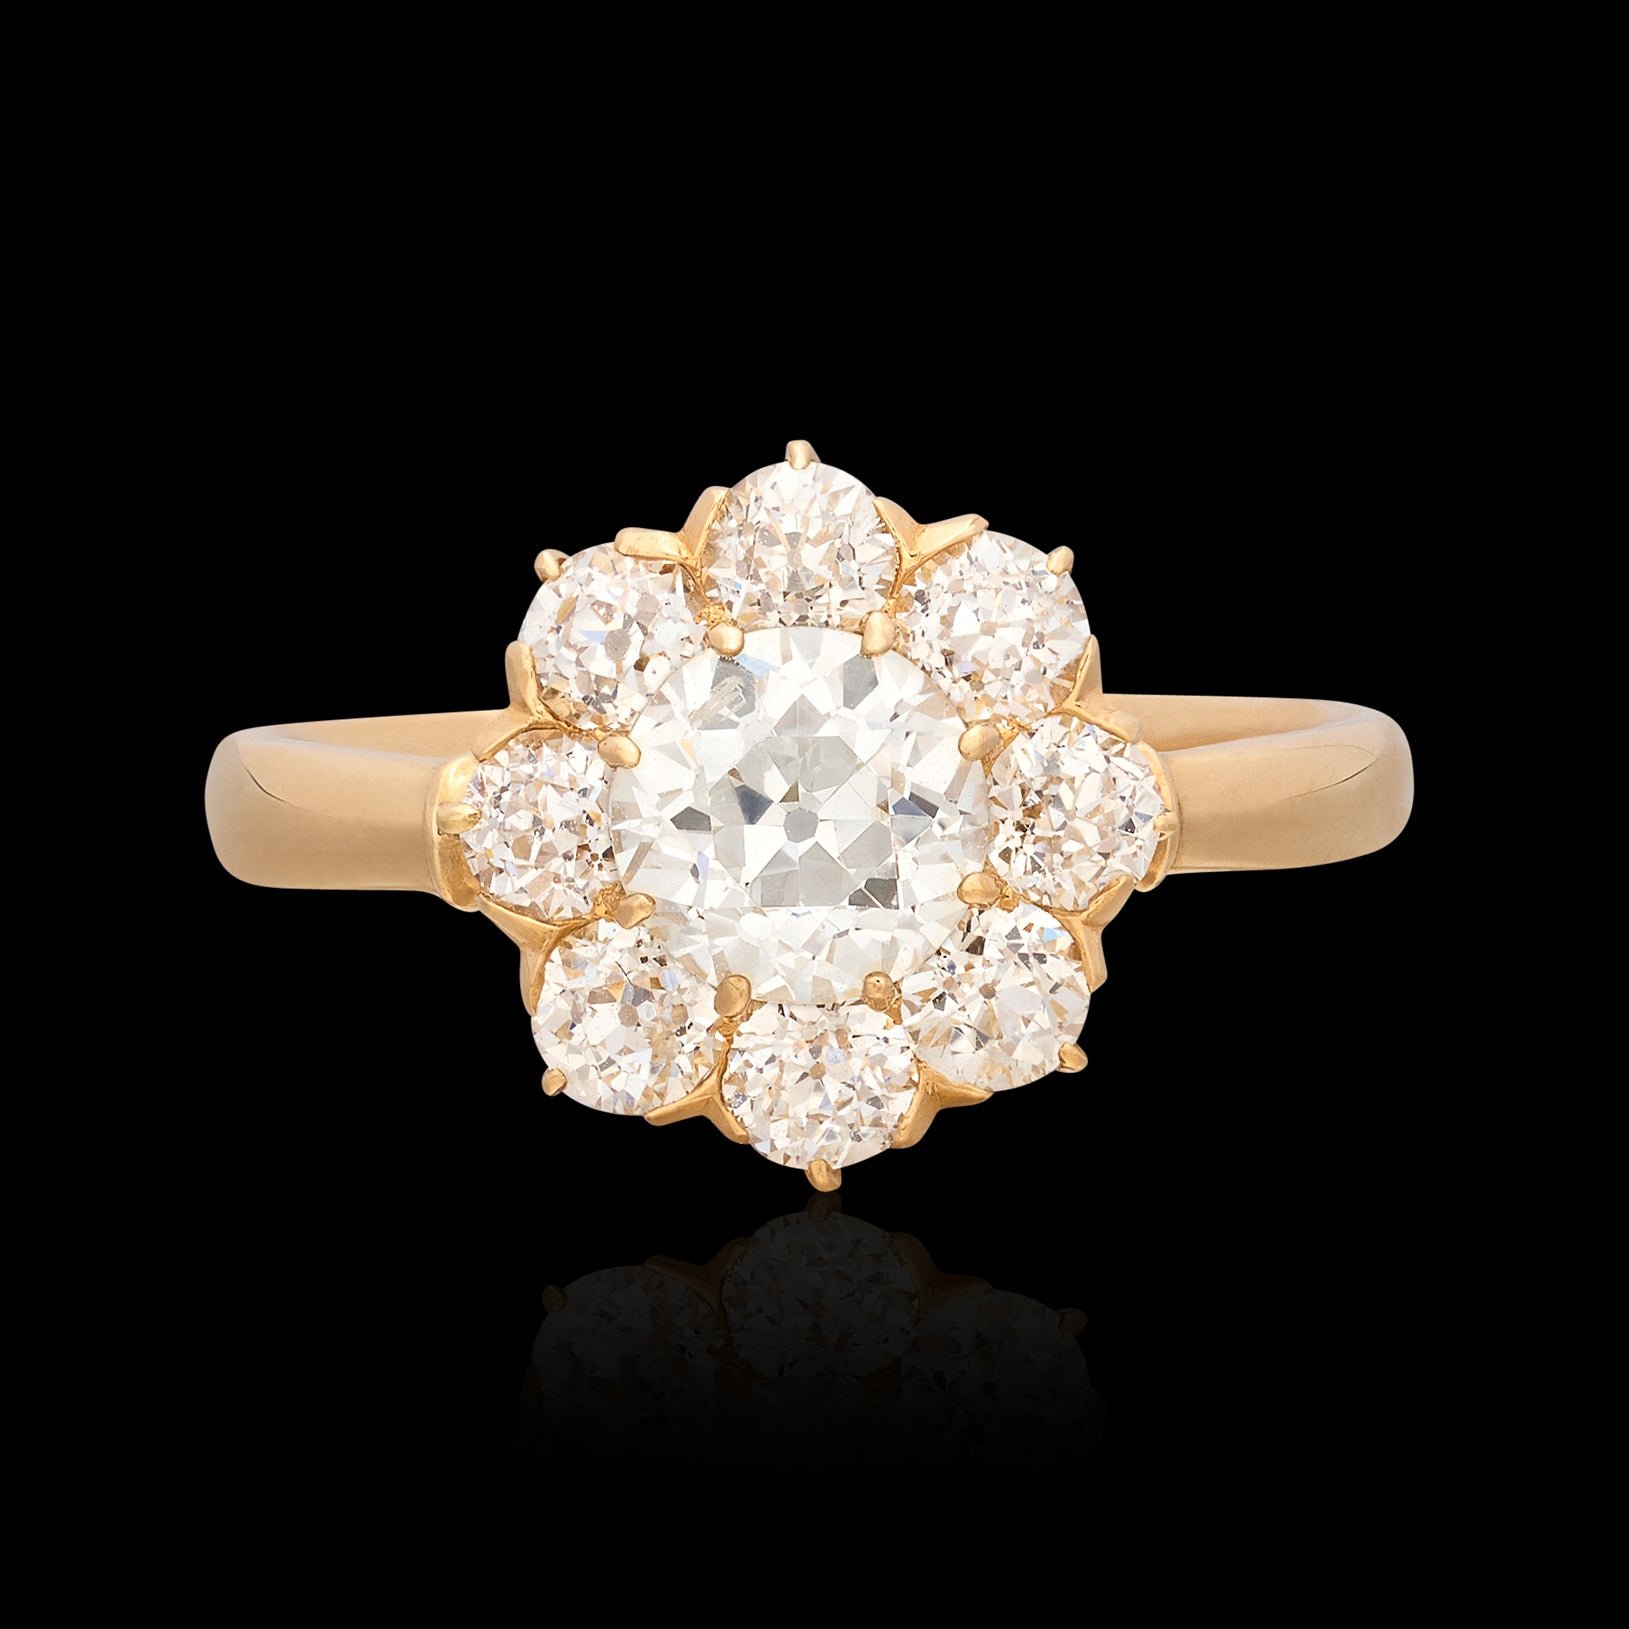 Yaniv Fine Jewelry 18K Gold Evil Eye Diamond Necklace with Sapphire Stone